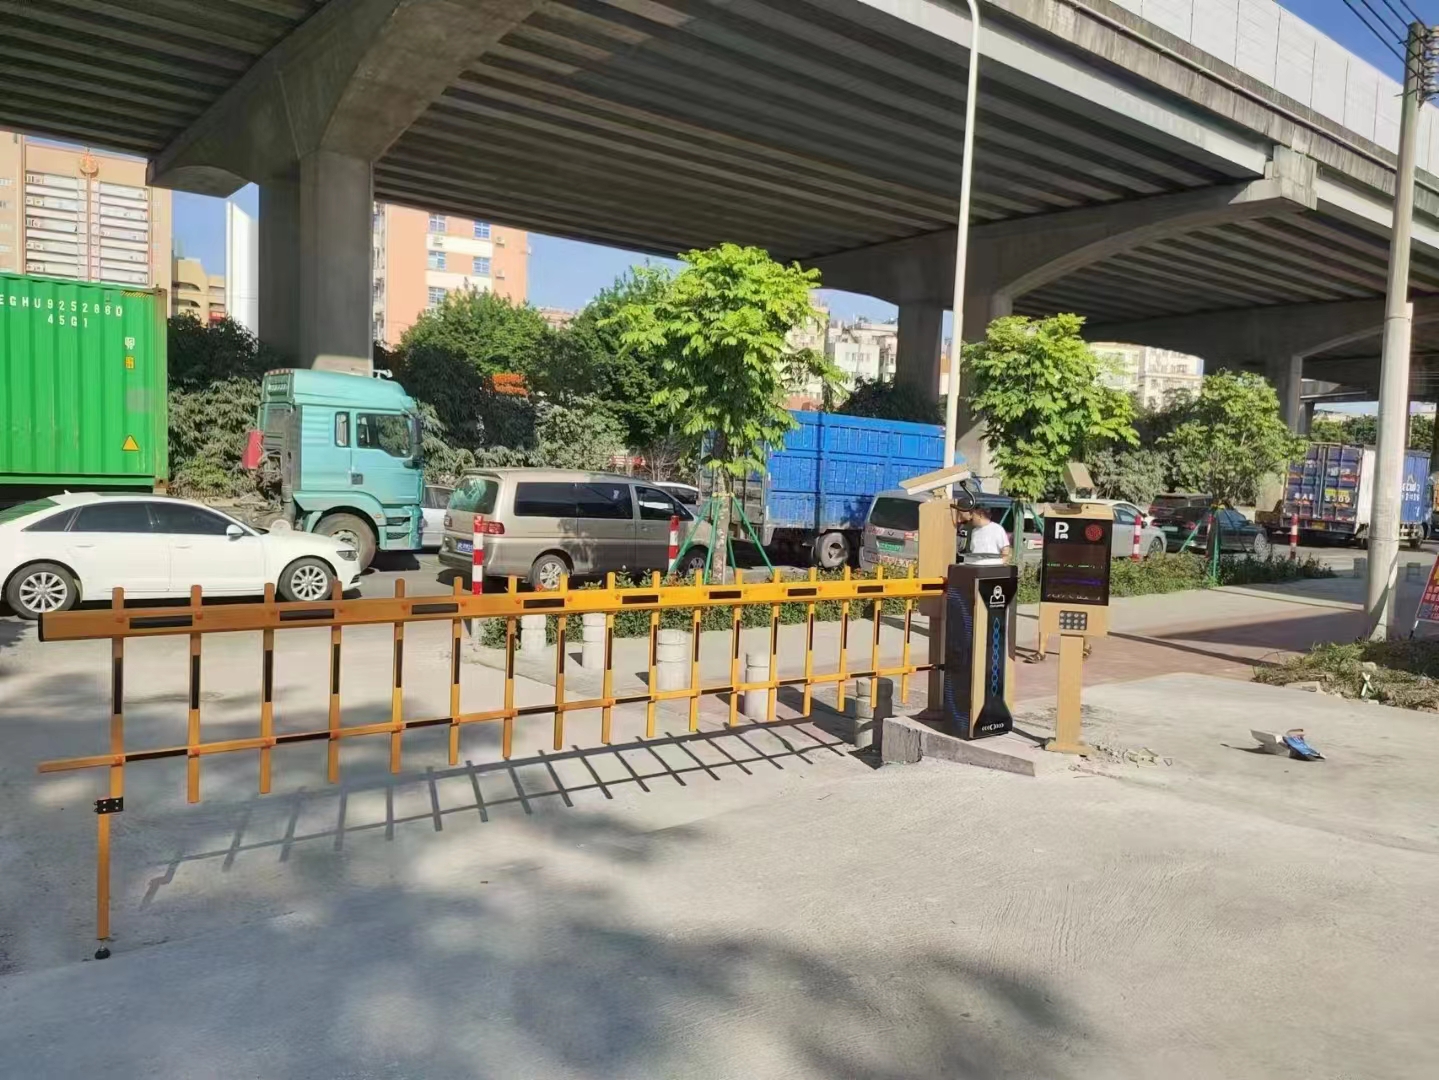 广州机场路夏矿智慧园区停车场与南网电动充电桩“顺易充”系统对接案列 园区智慧停车场案列 第2张